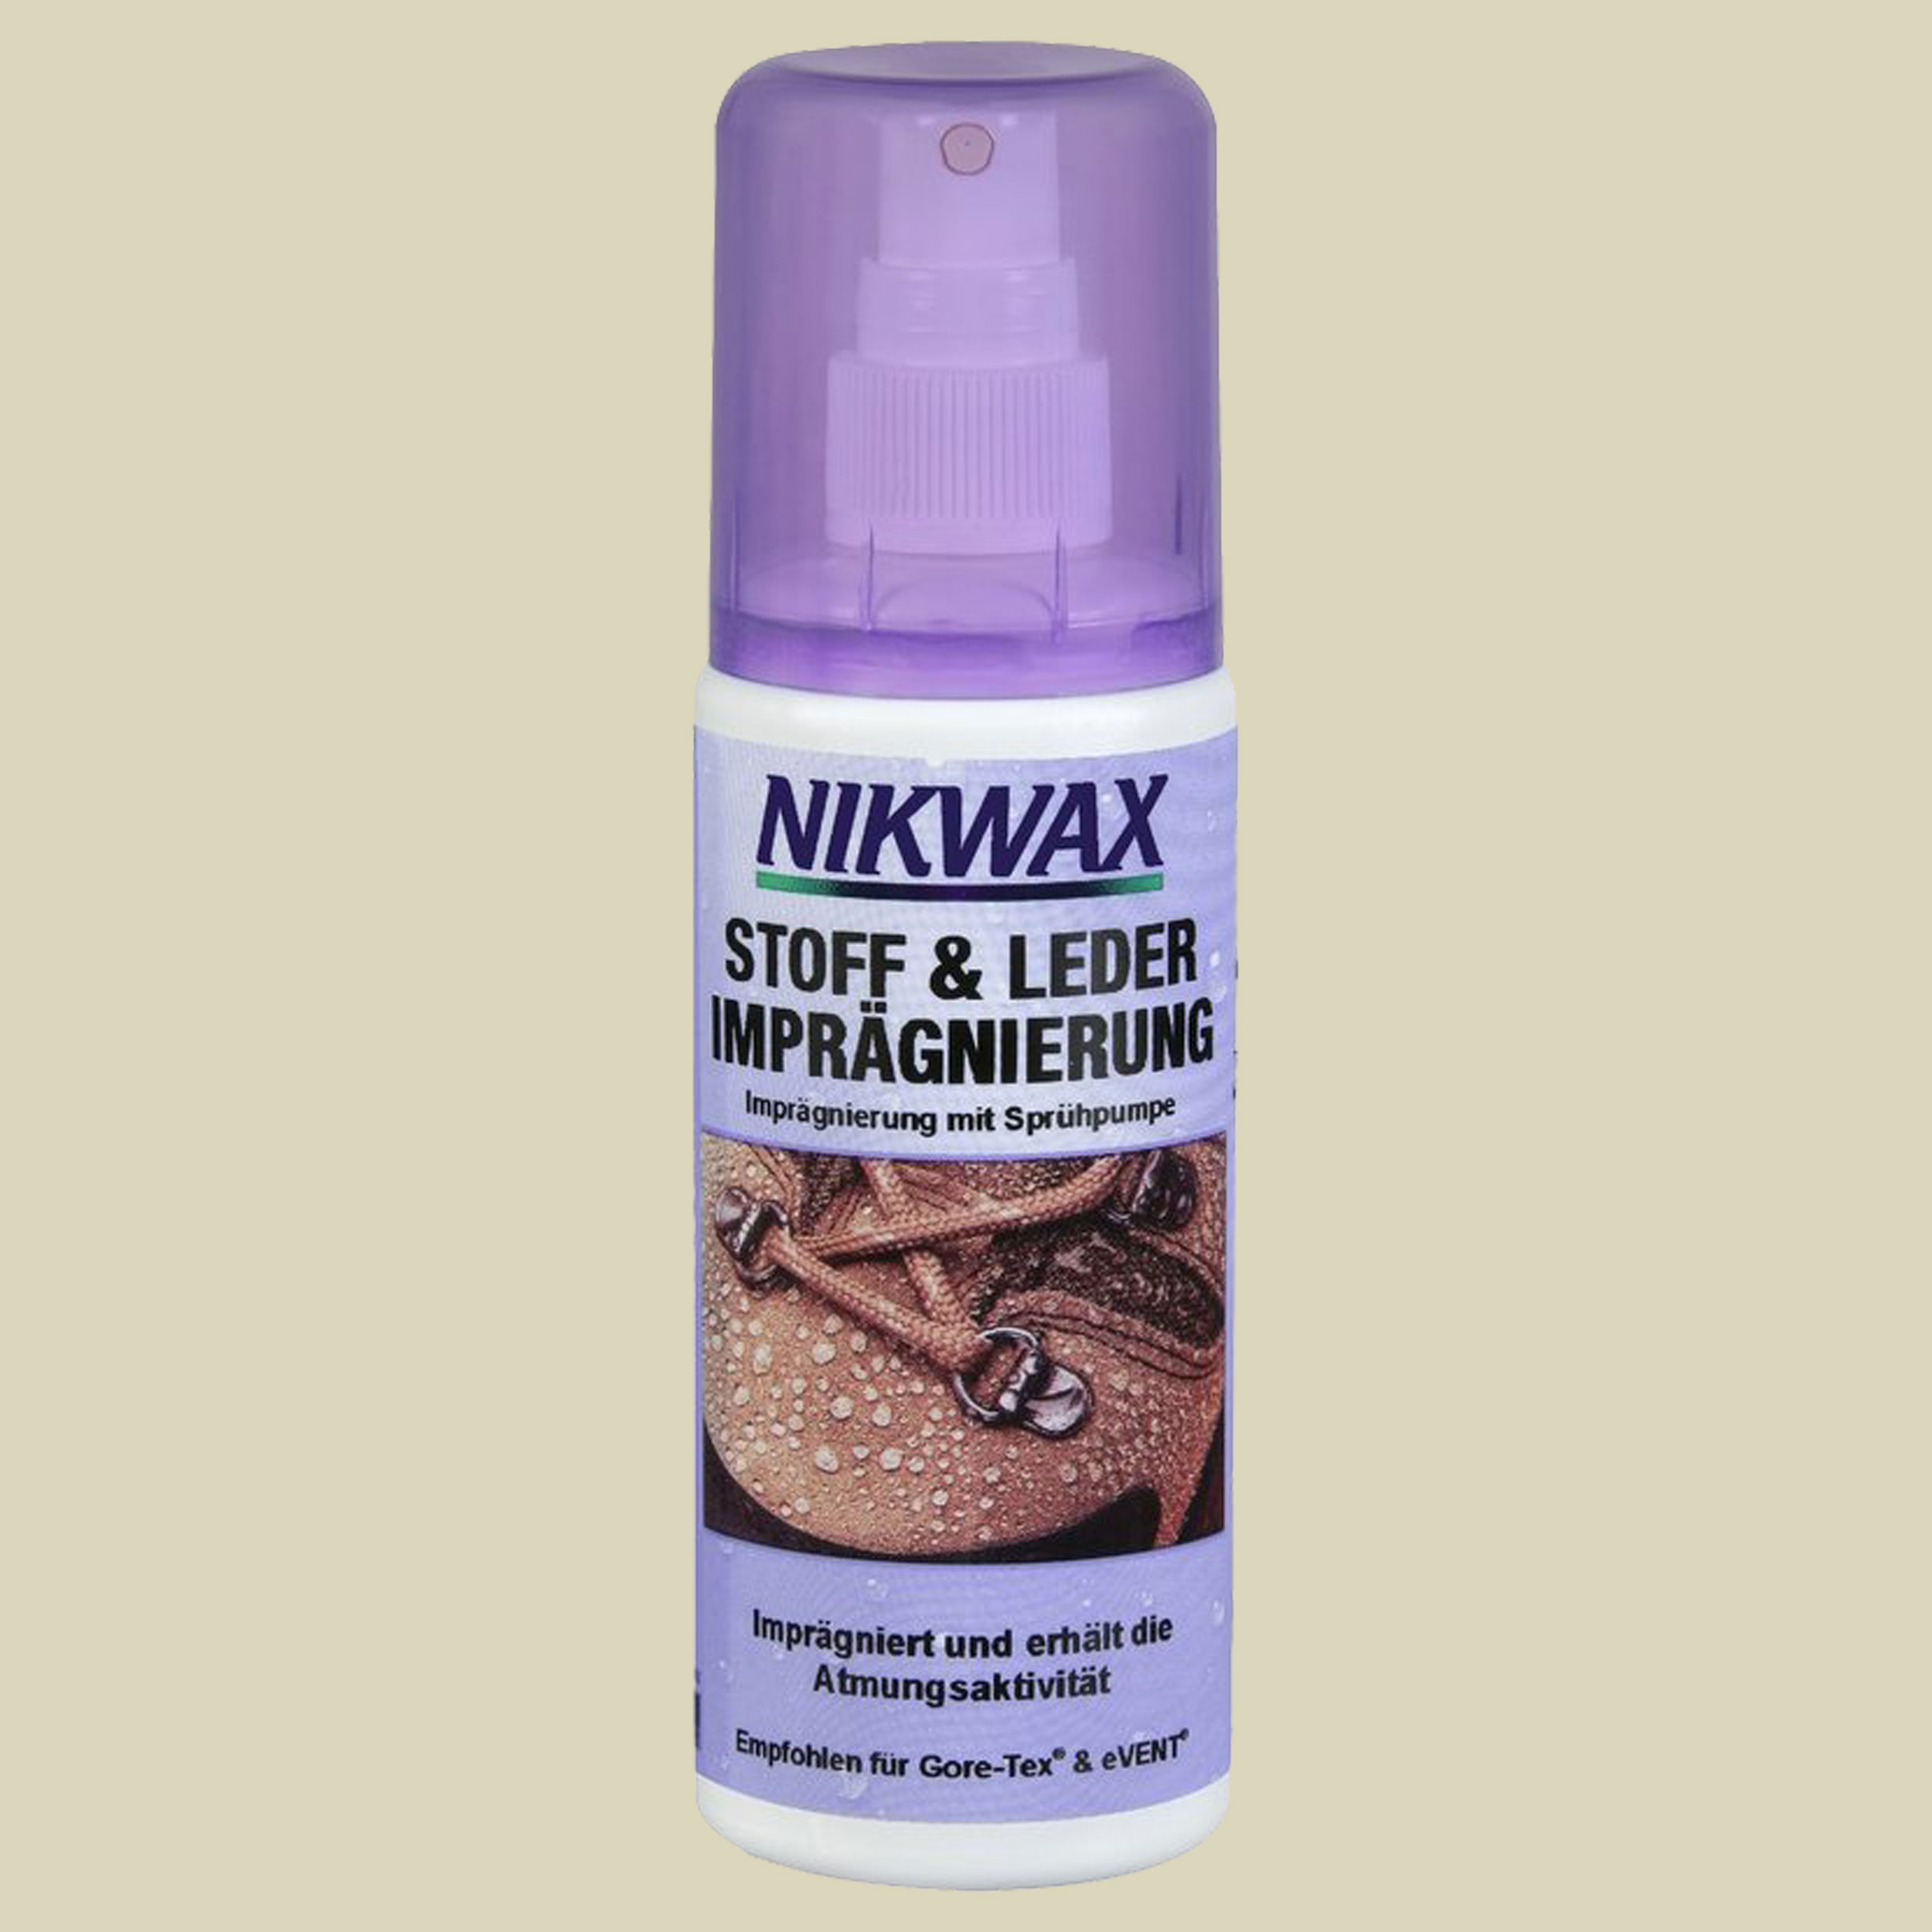 Stoff & Leder Imprägnierung Spray-On 125ml Inhalt 125 ml